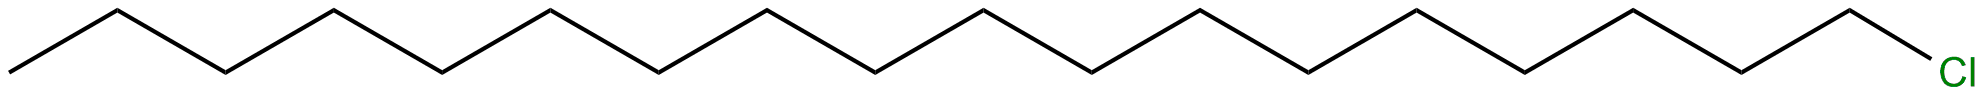 Image of 1-chlorooctadecane